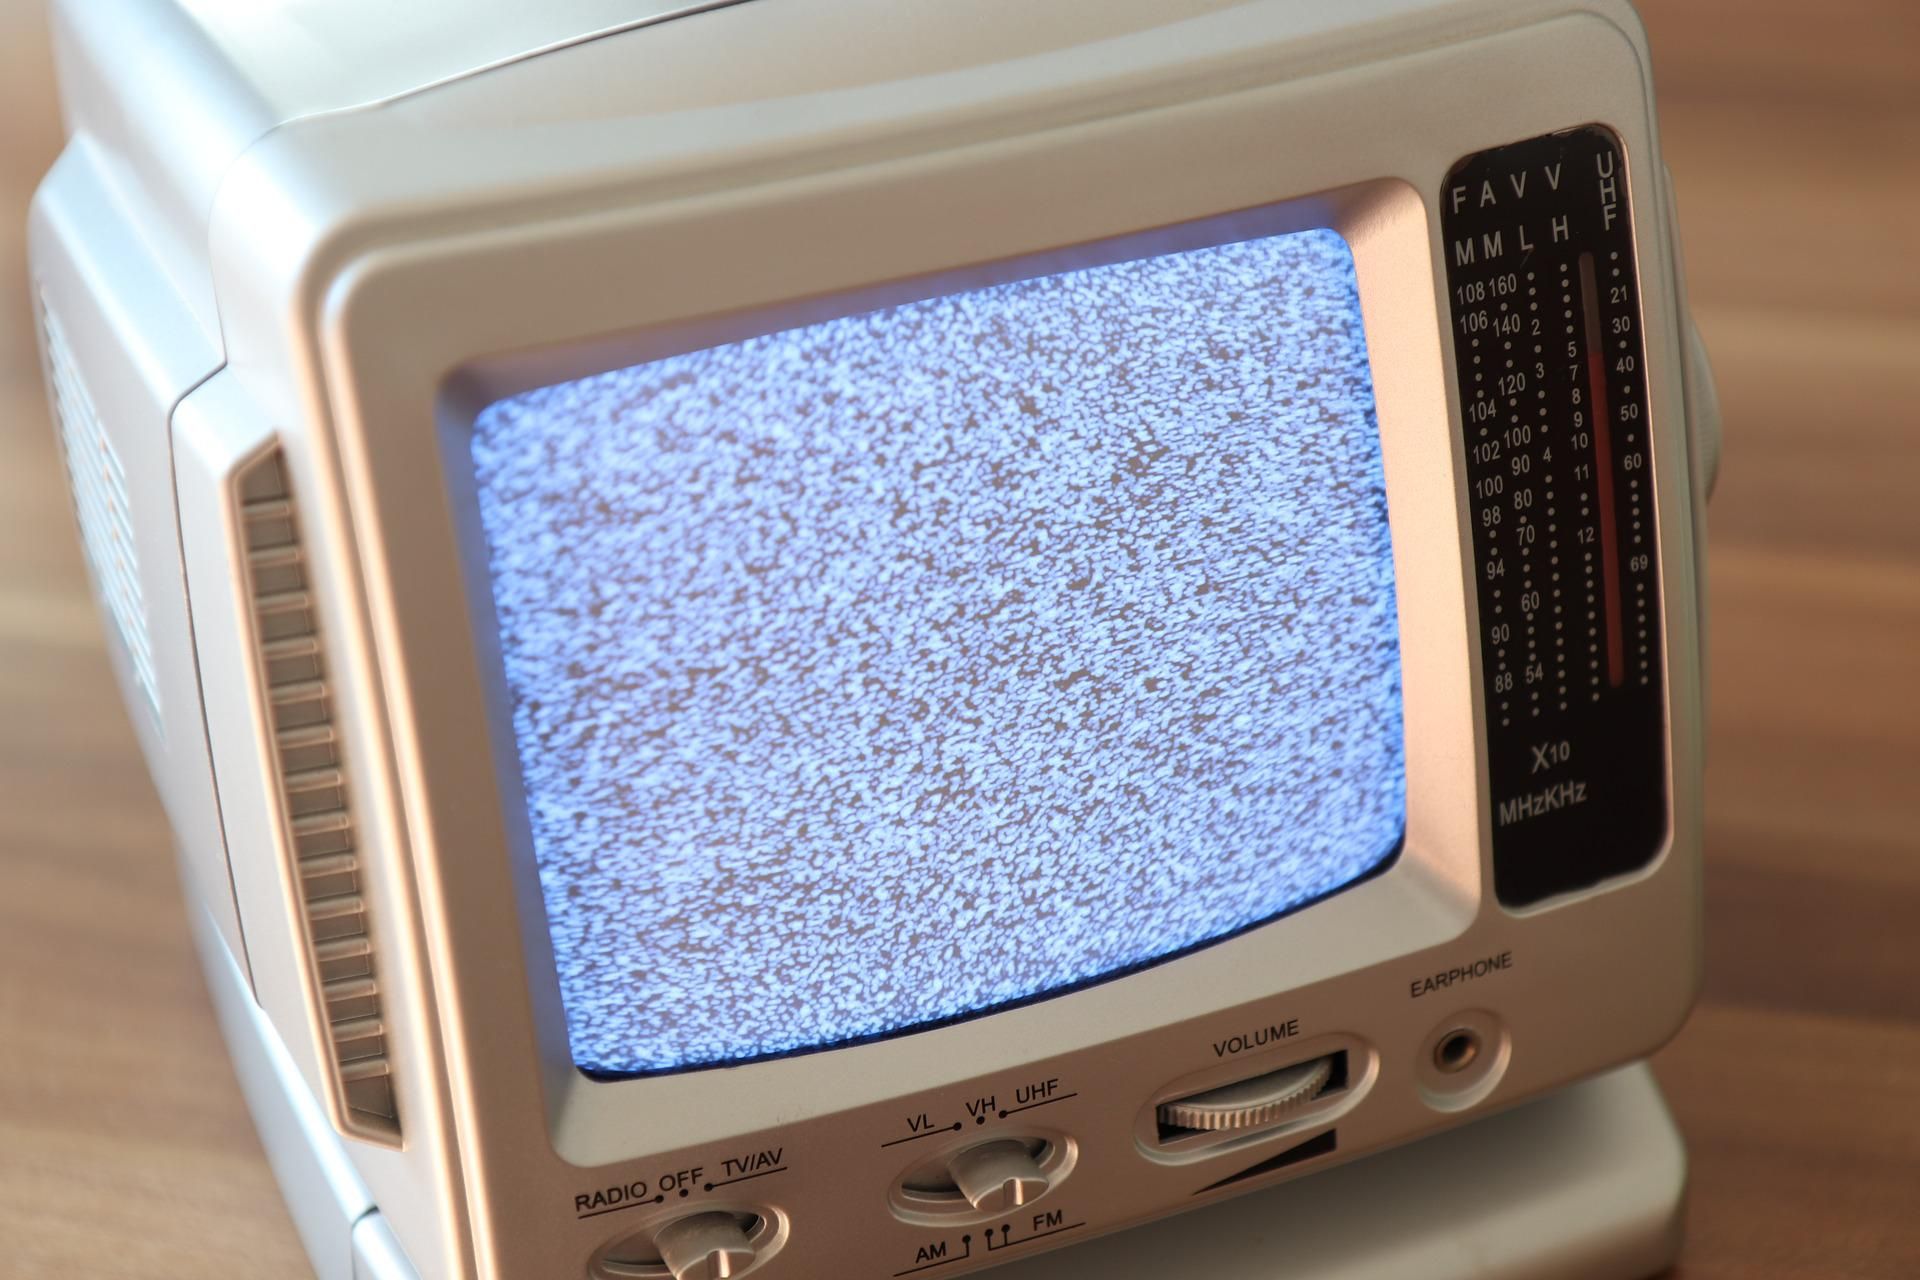 Ilustrasi - Channel TV RCTI, Indosiar, SCTV, DLL Hilang, Berikut Solusi Mudah Munculkan Kembali Siaran TV Digital